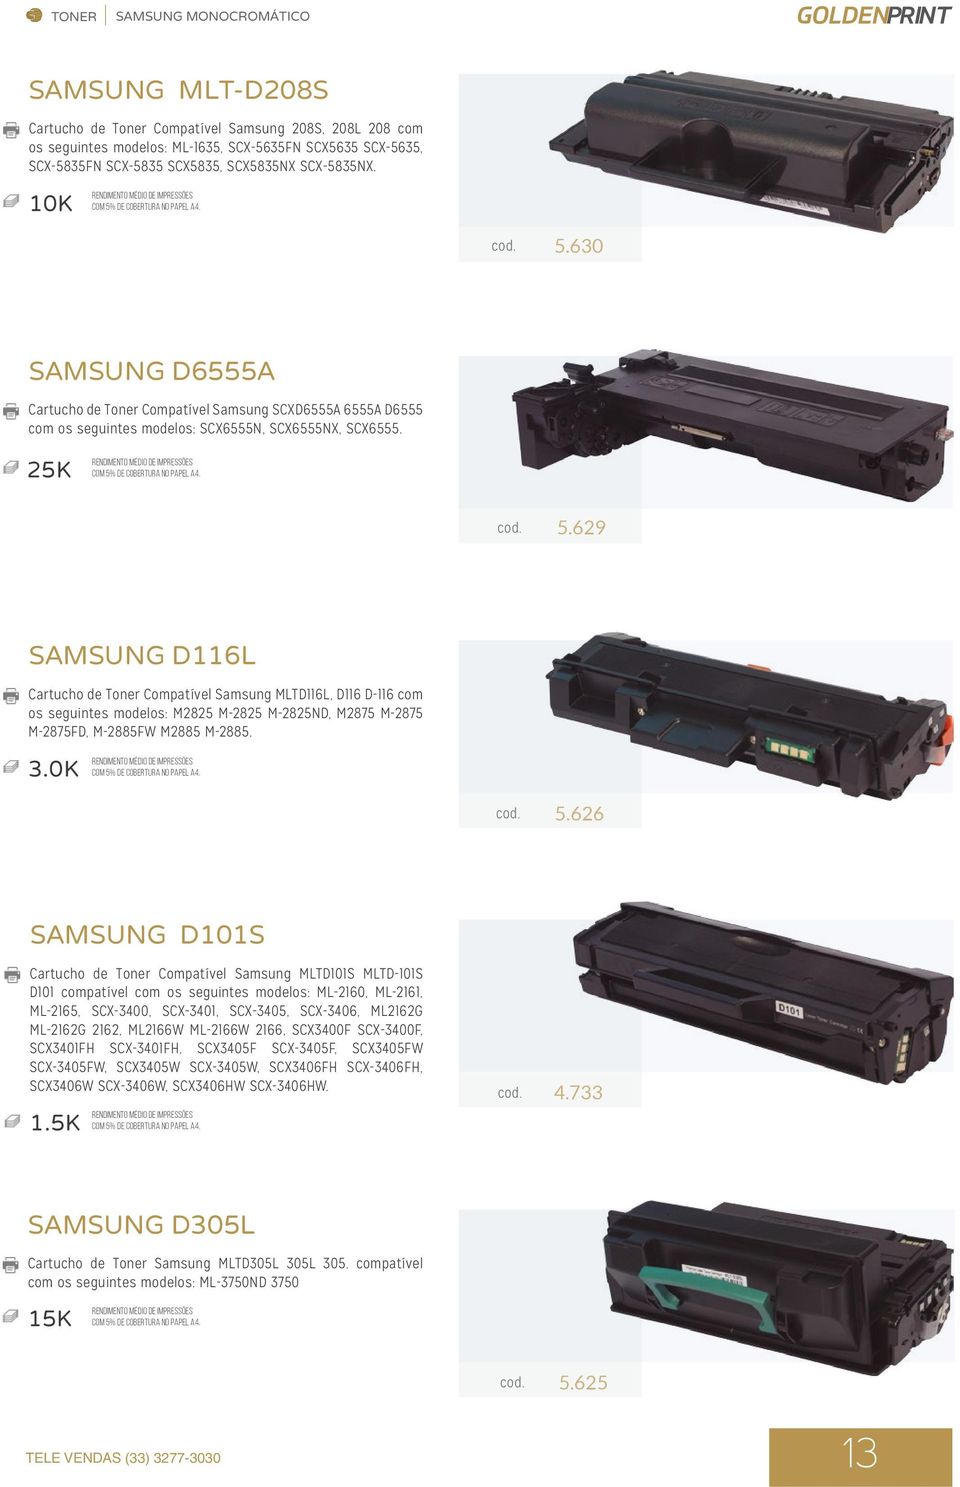 630 SAMSUNG D6555A Cartucho de Toner Compatível Samsung SCXD6555A 6555A D6555 com os seguintes modelos: SCX6555N, SCX6555NX, SCX6555. 25K cod. 5.